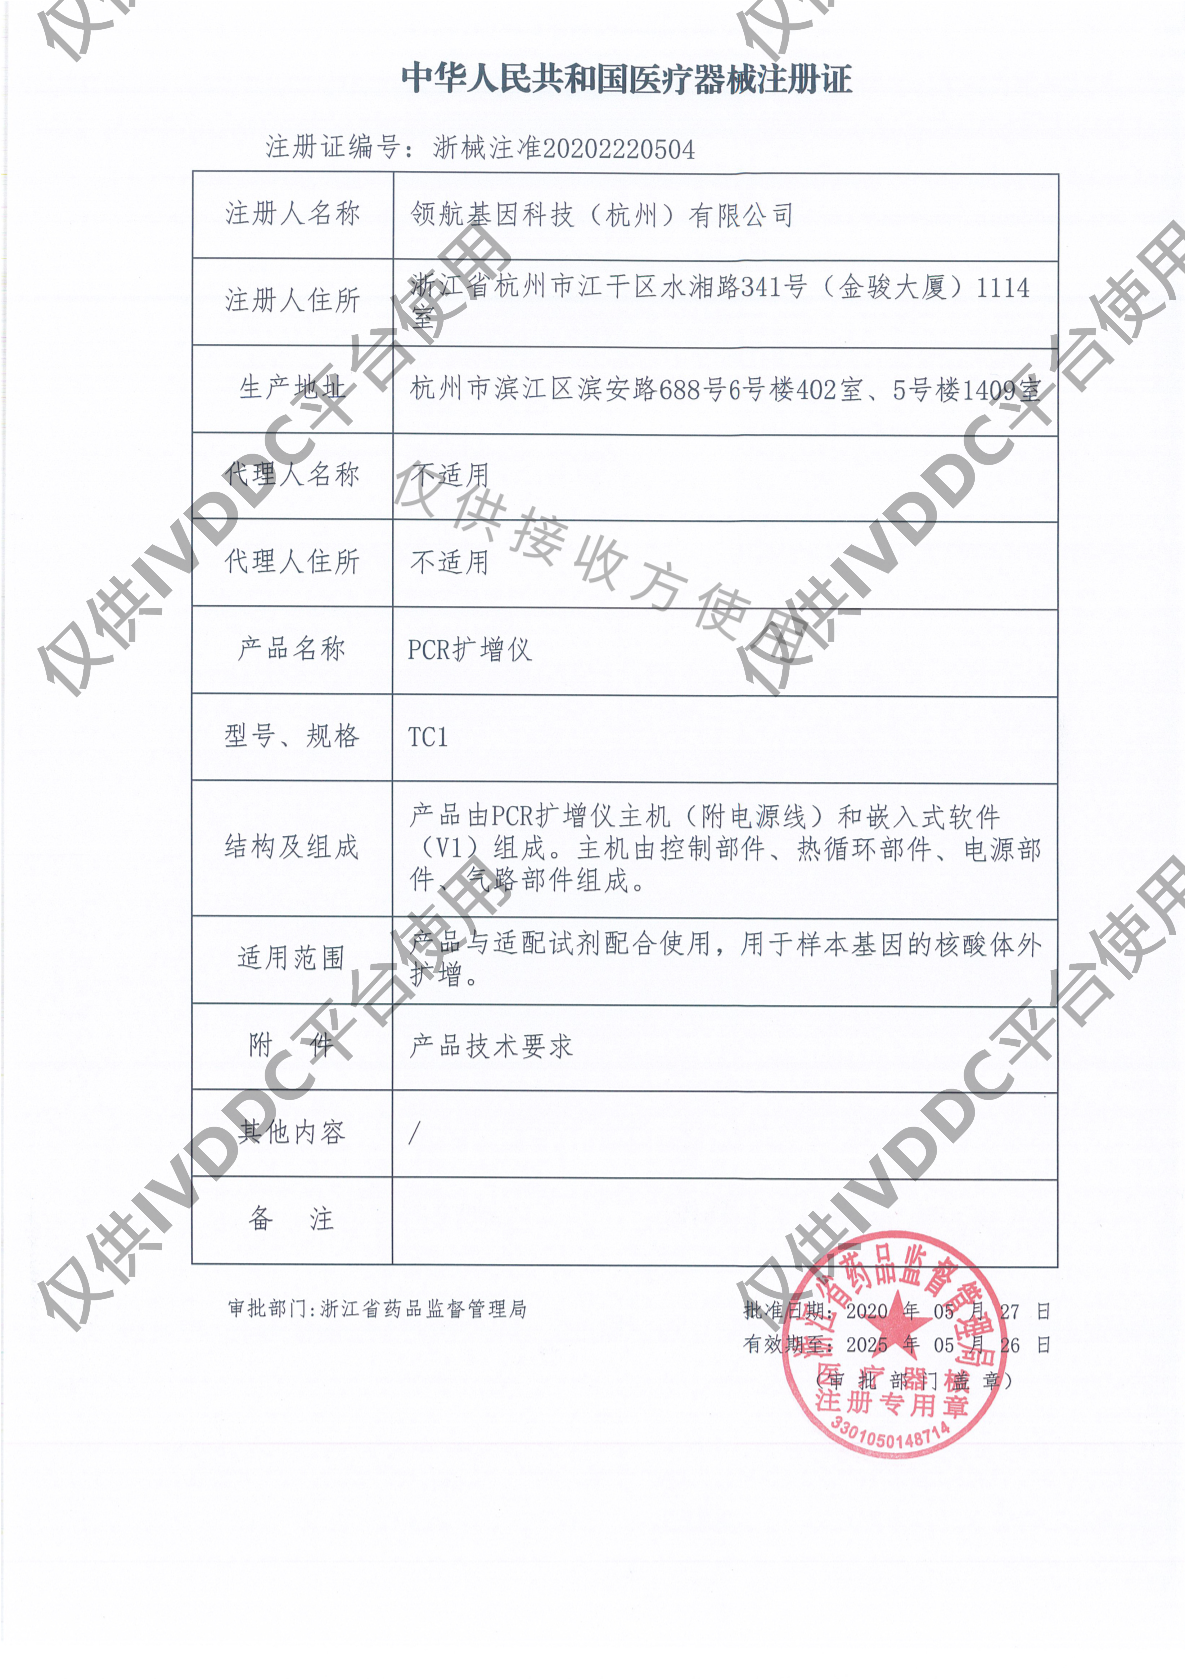 【杭州领航】 PCR扩增仪 TC1注册证